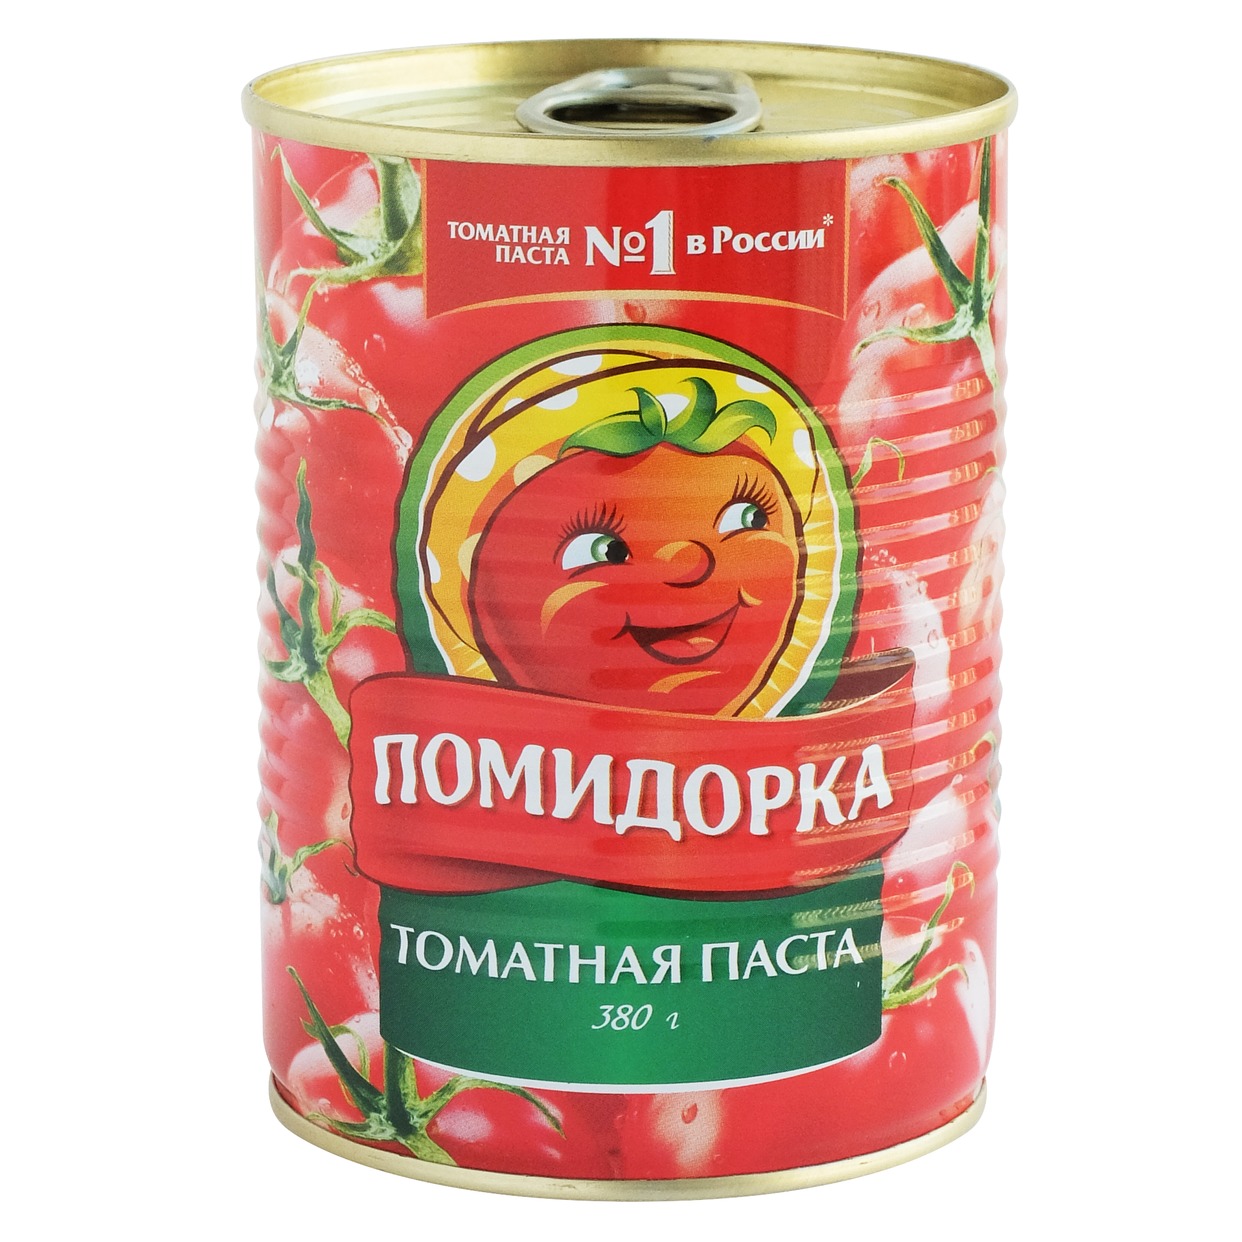 Паста томатная, Помидорка, 380 г по акции в Пятерочке